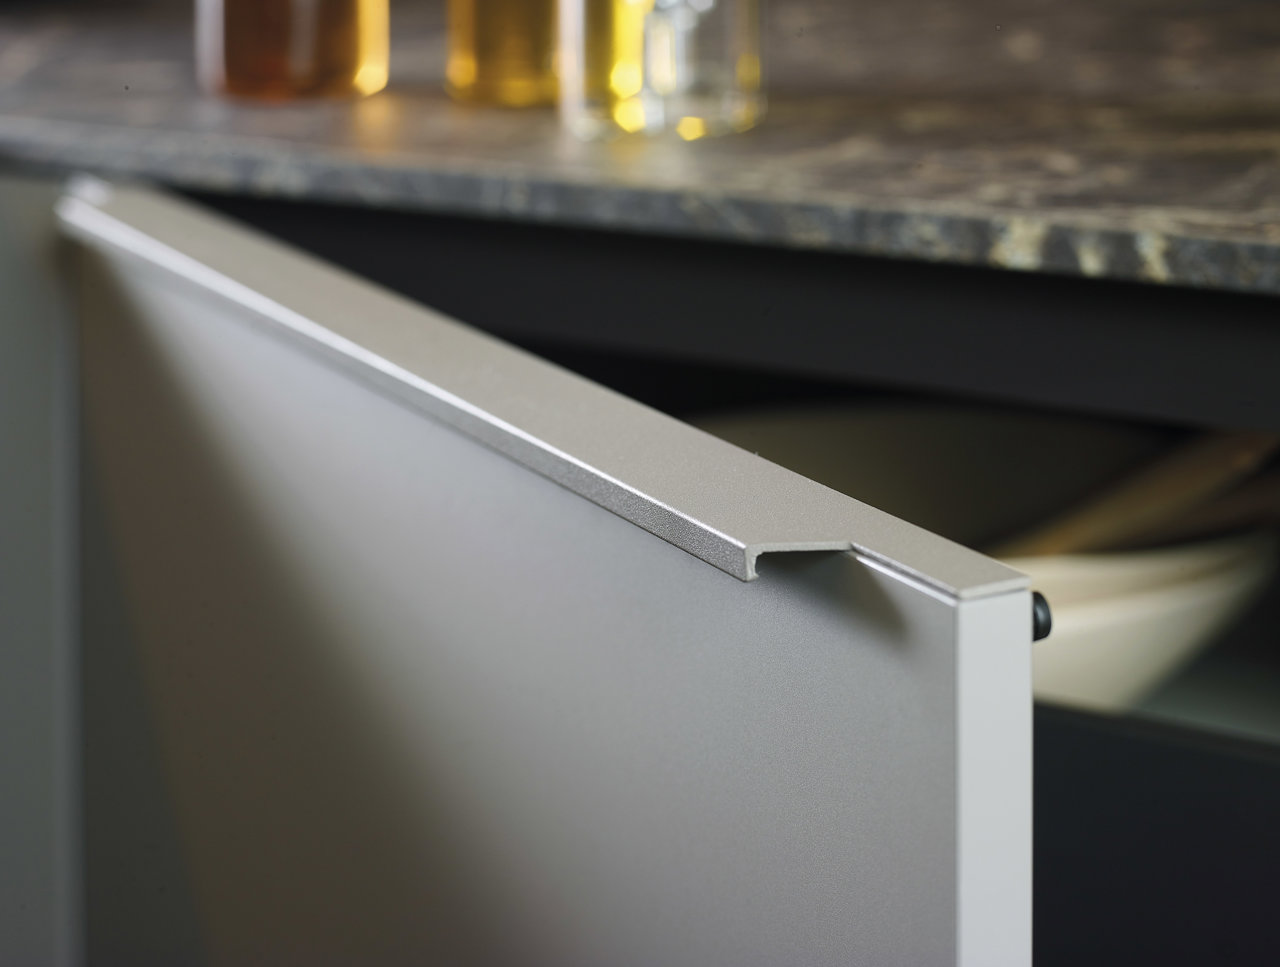 Los tiradores lineales de aluminio se integran discretamente en la parte superior de puertas y cajones